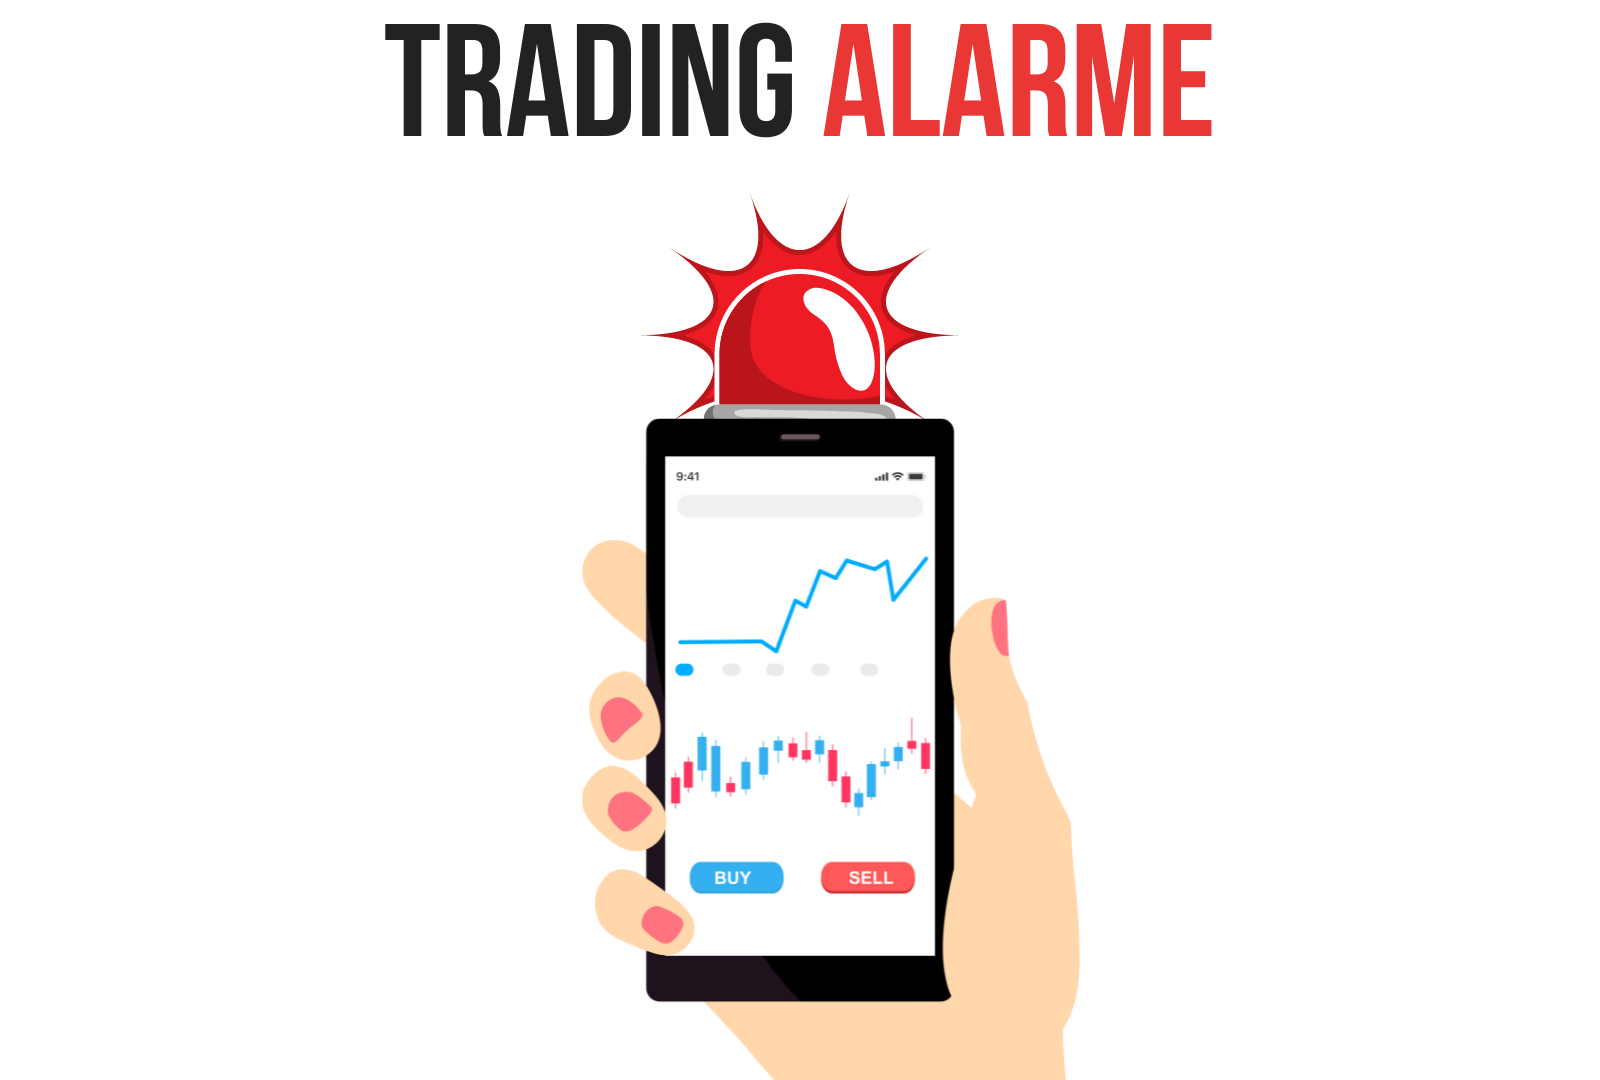 Trading Alarme